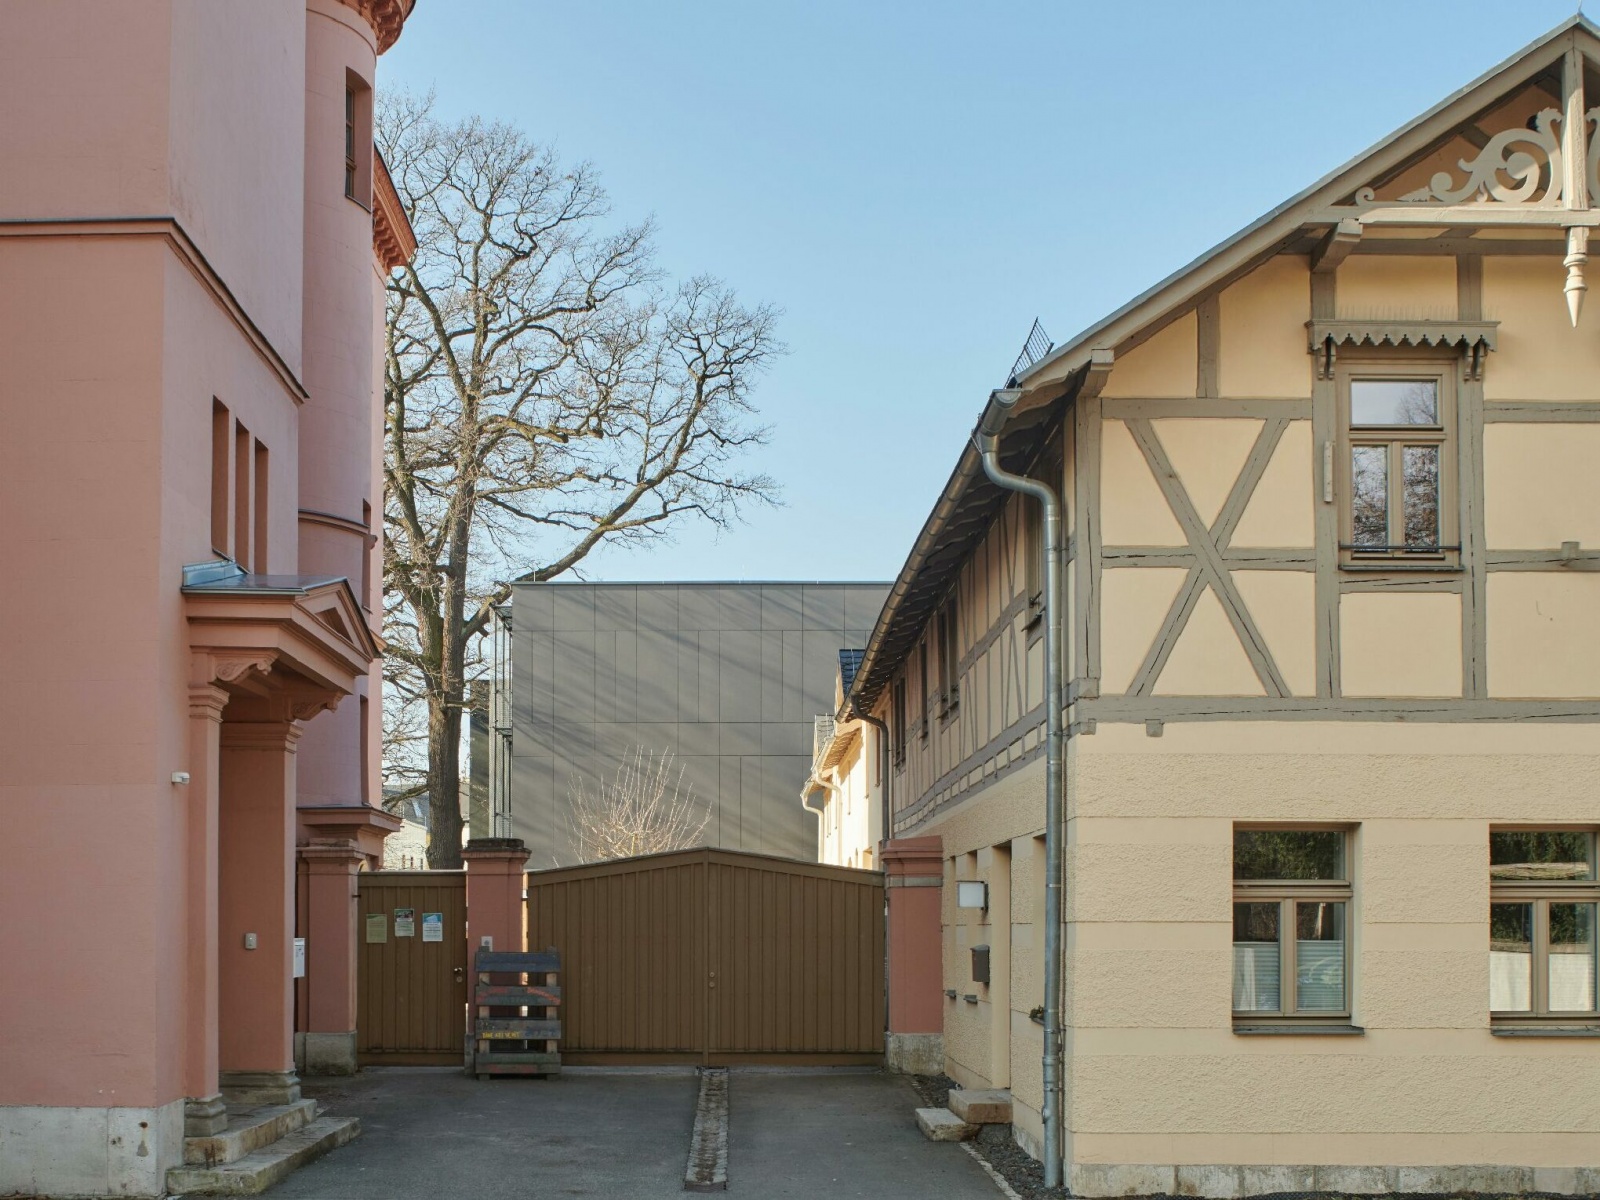 bauMhaus.kita Zugangssituation, Bild: Andreas Reich, Weimar